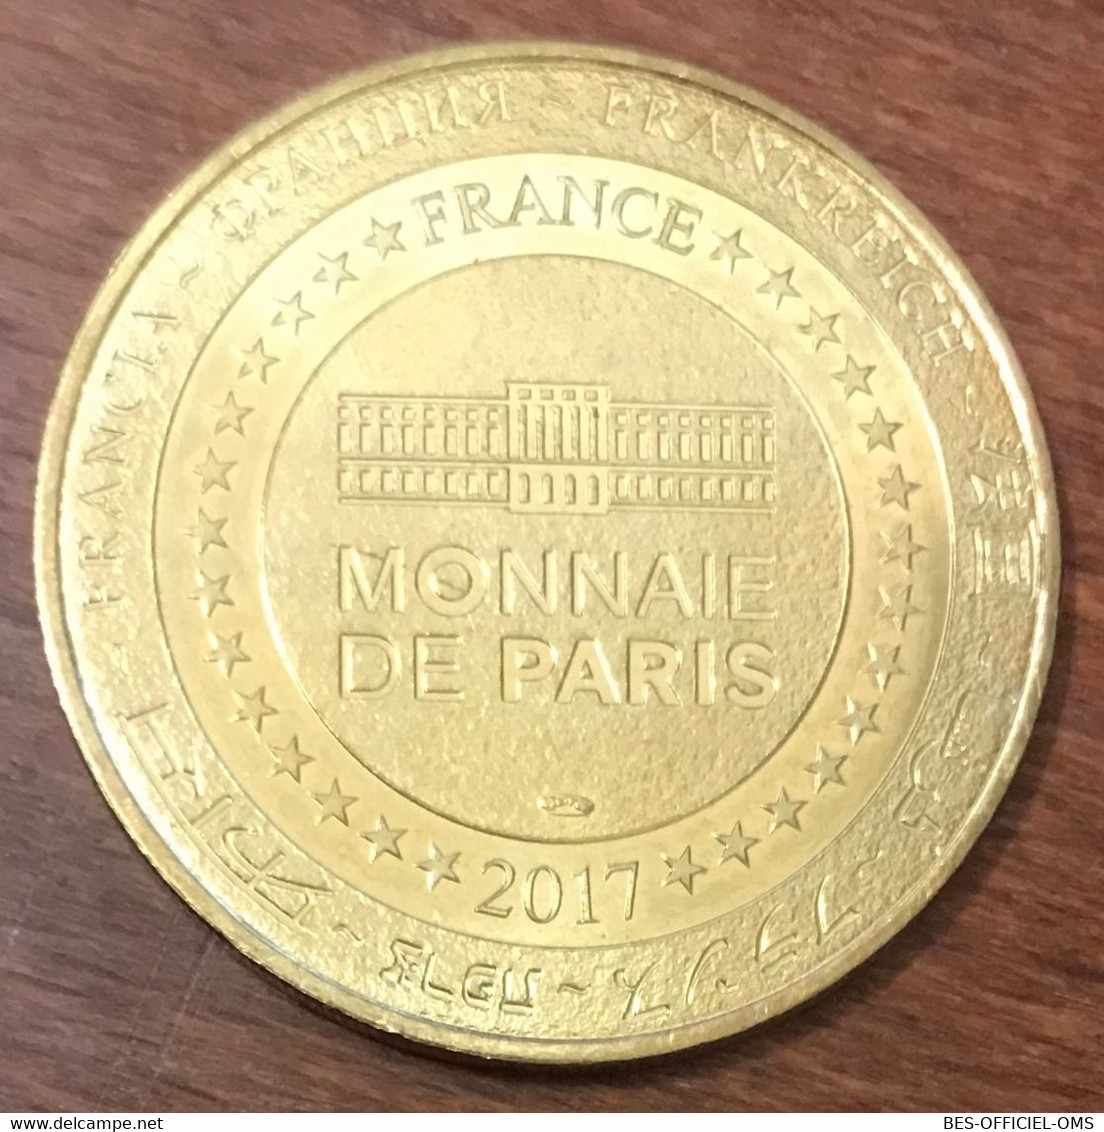 22 CÔTES-D'ARMOR ZOOPARC TREGOMEUR LION D'ASIE MDP 2017 MÉDAILLE MONNAIE DE PARIS JETON TOURISTIQUE TOKENS MEDALS COINS - 2017